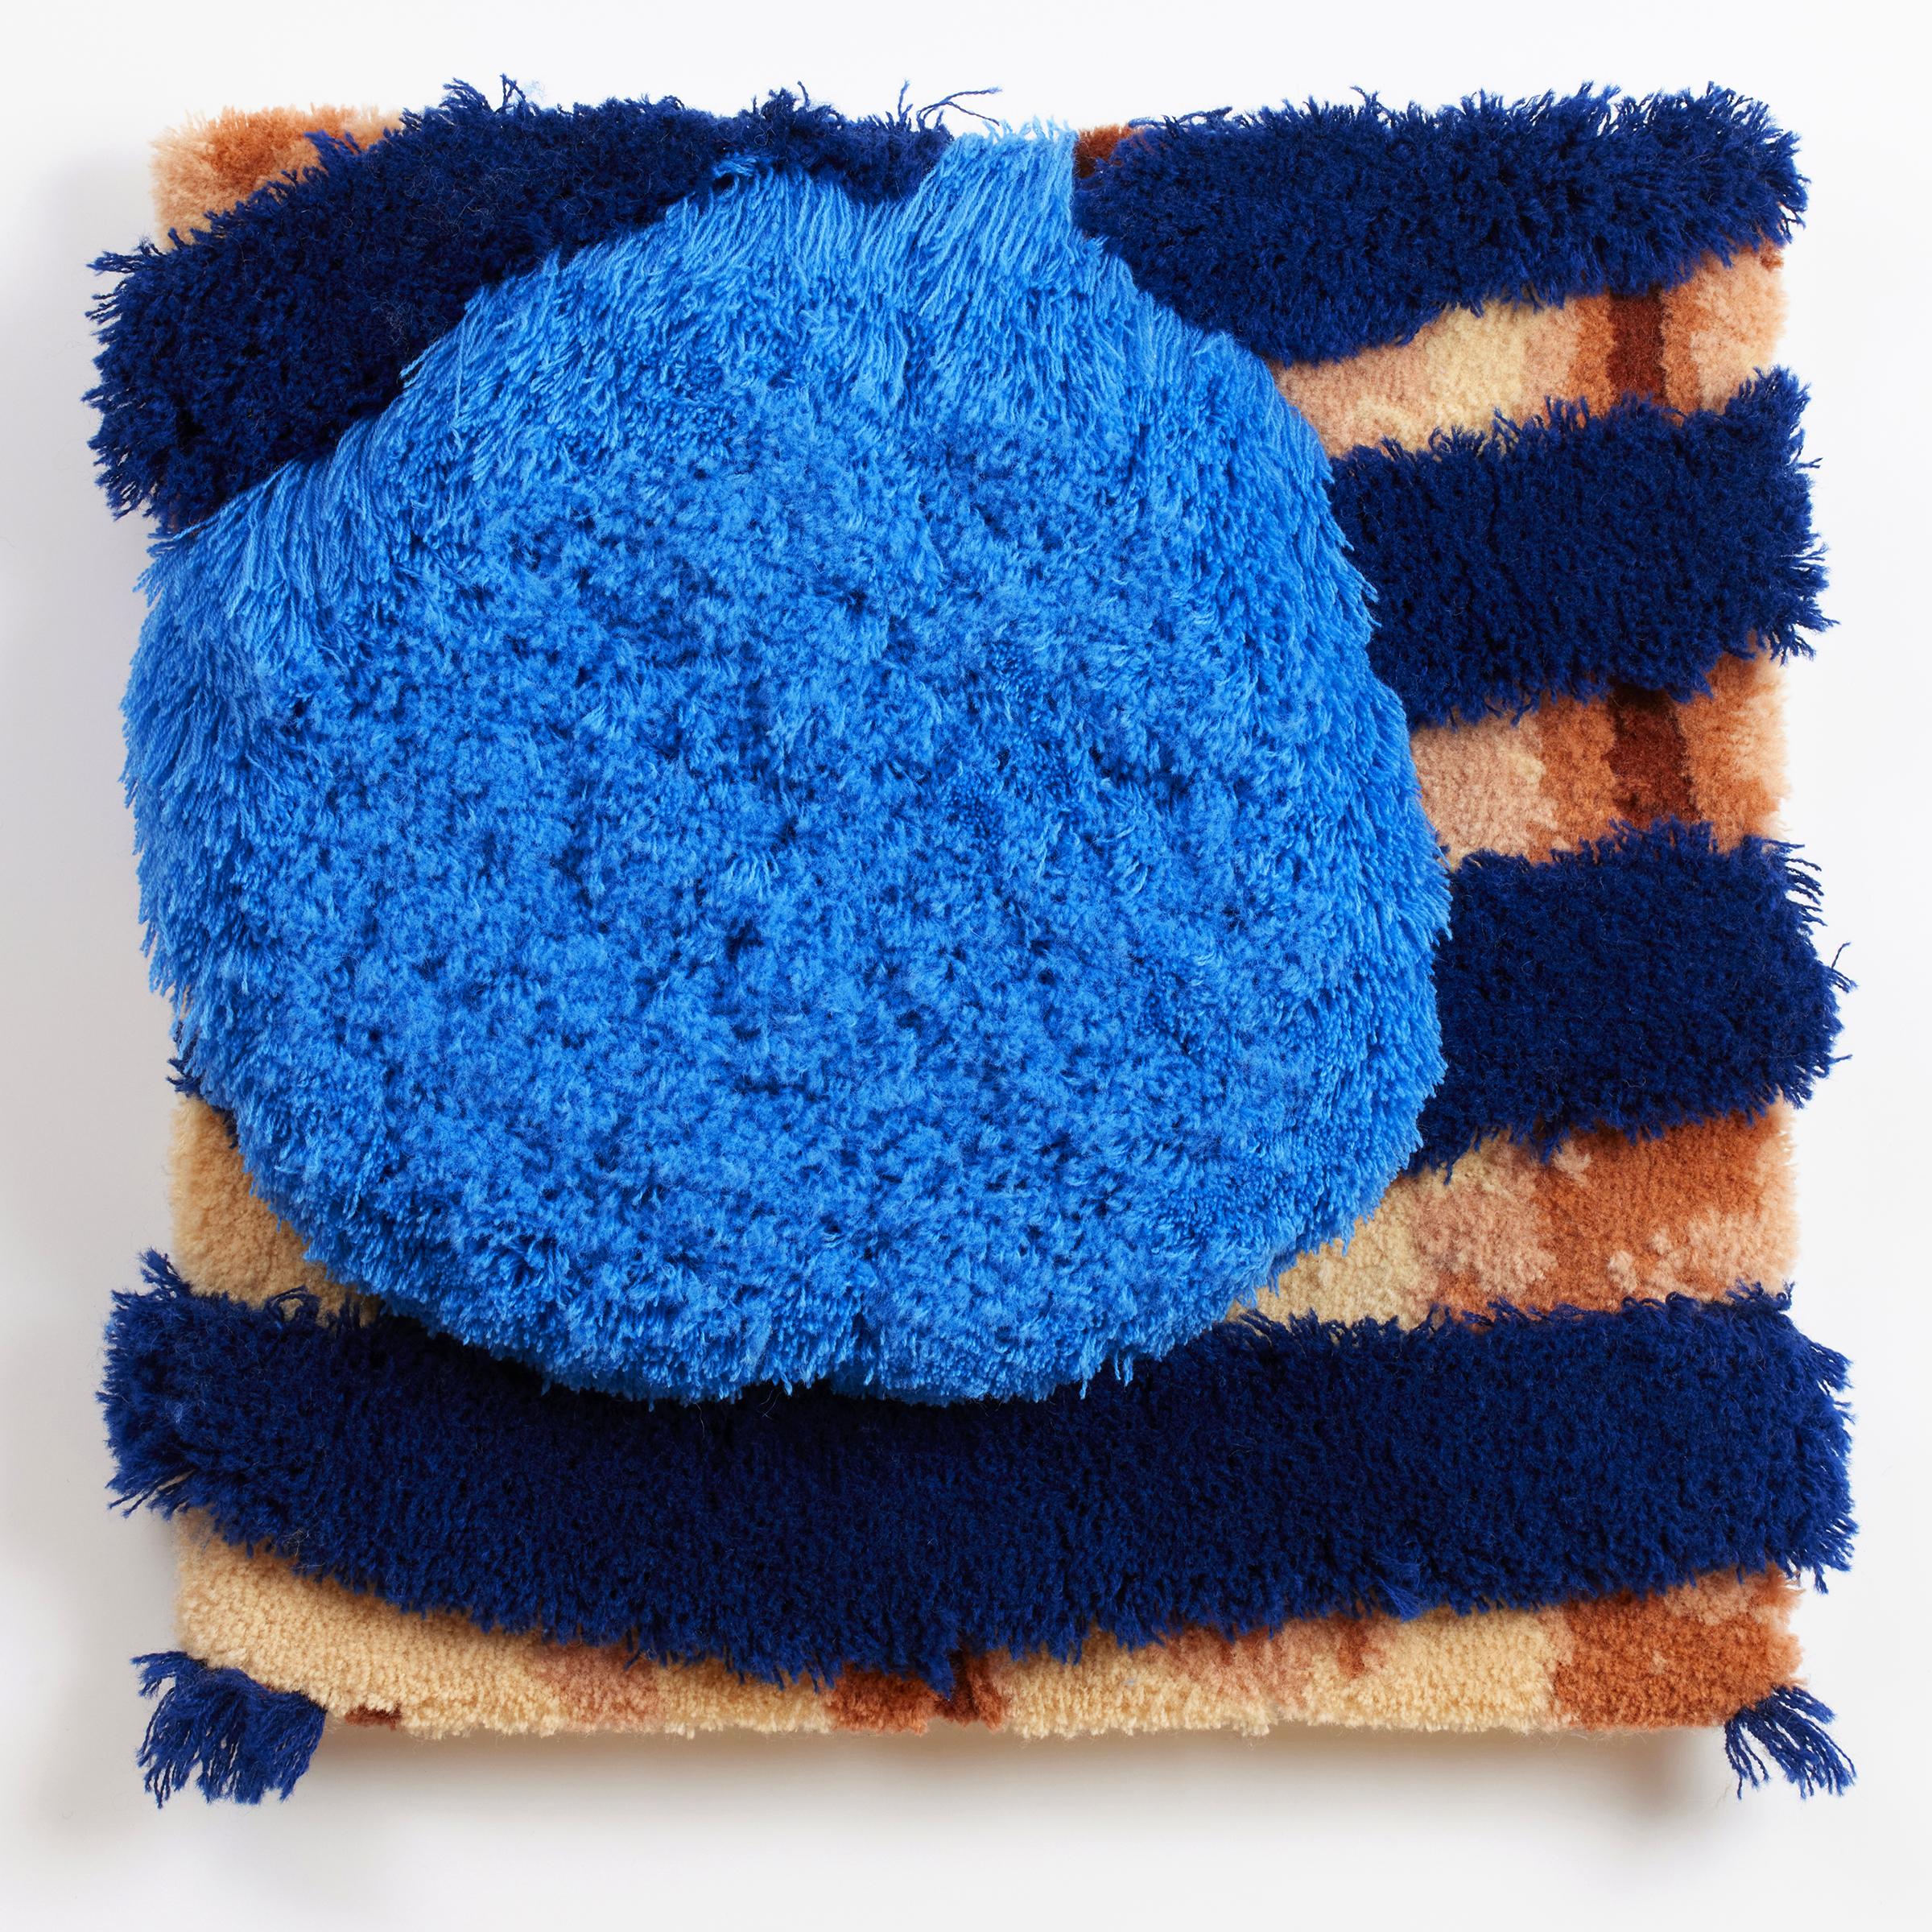 Blue Boy" - zeitgenössische Faserkunst, Textur, Muster, Streifen, Tuft